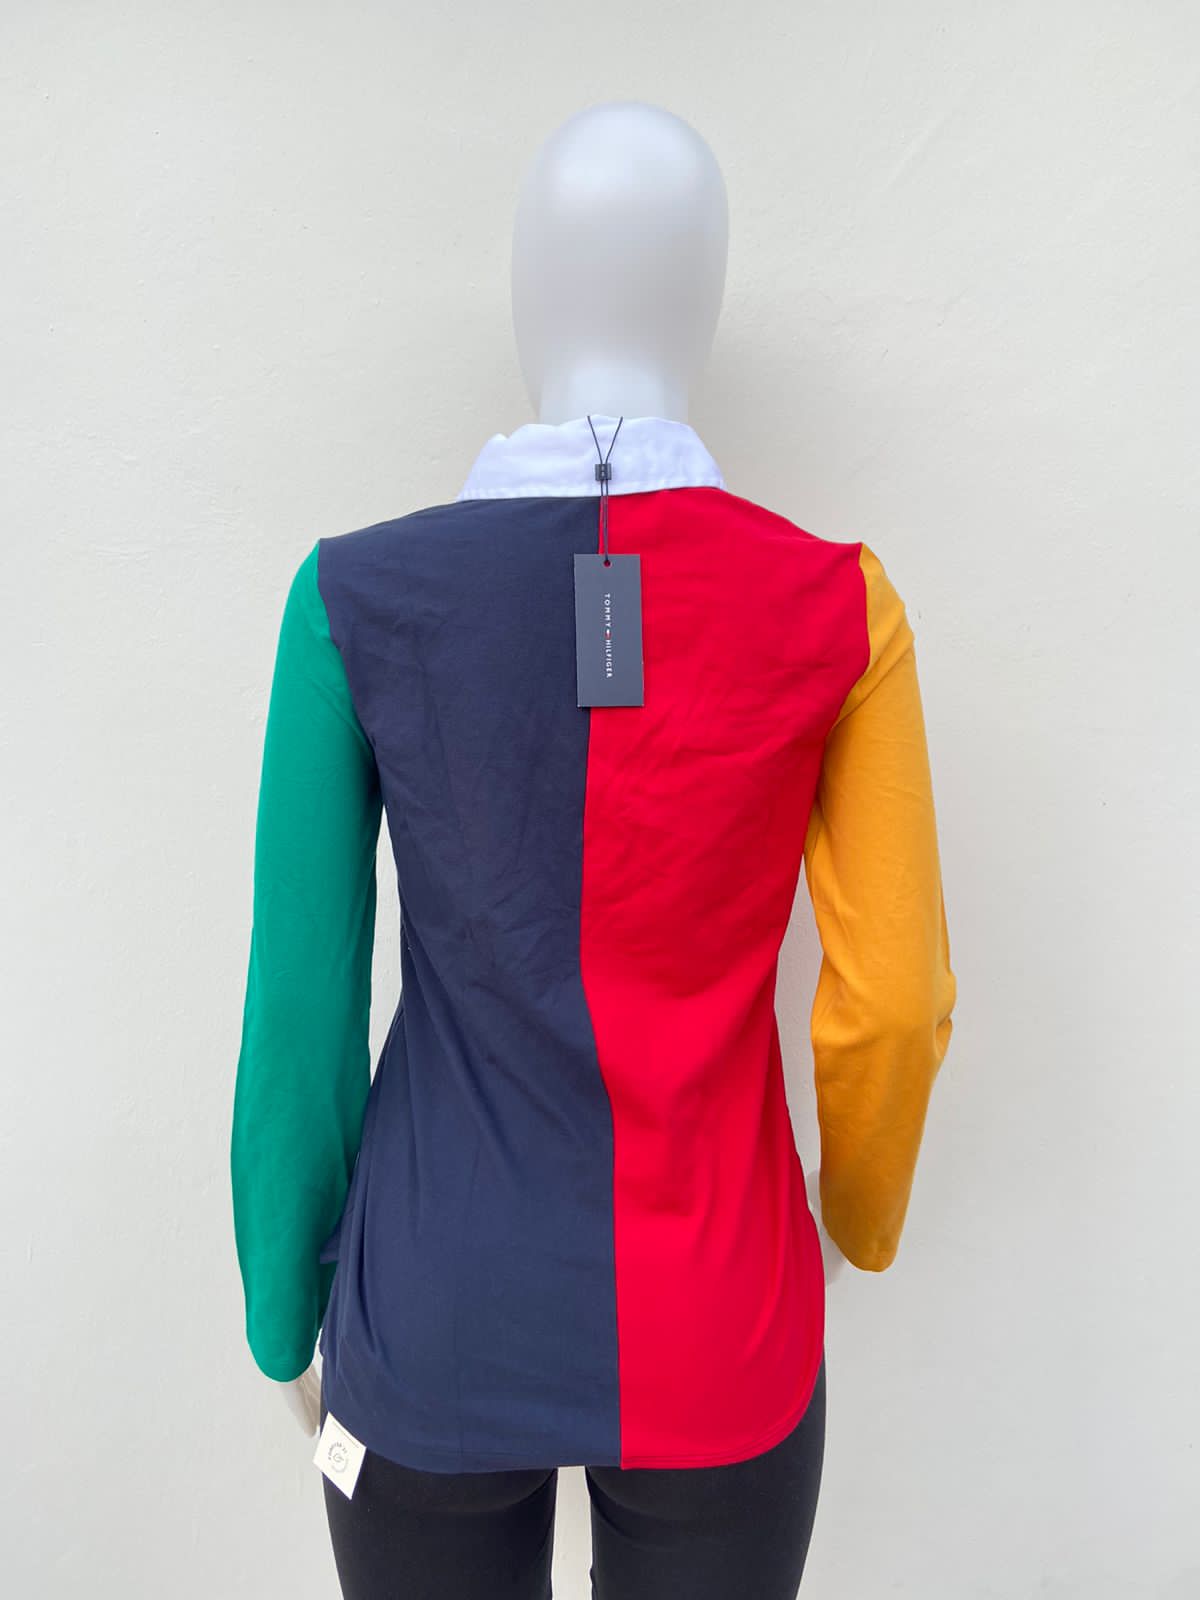 Suéter TOMMY HILFIGER original, azul, rojo, verde y naranja con cuello blanco y letras TH en color rojo en un lado